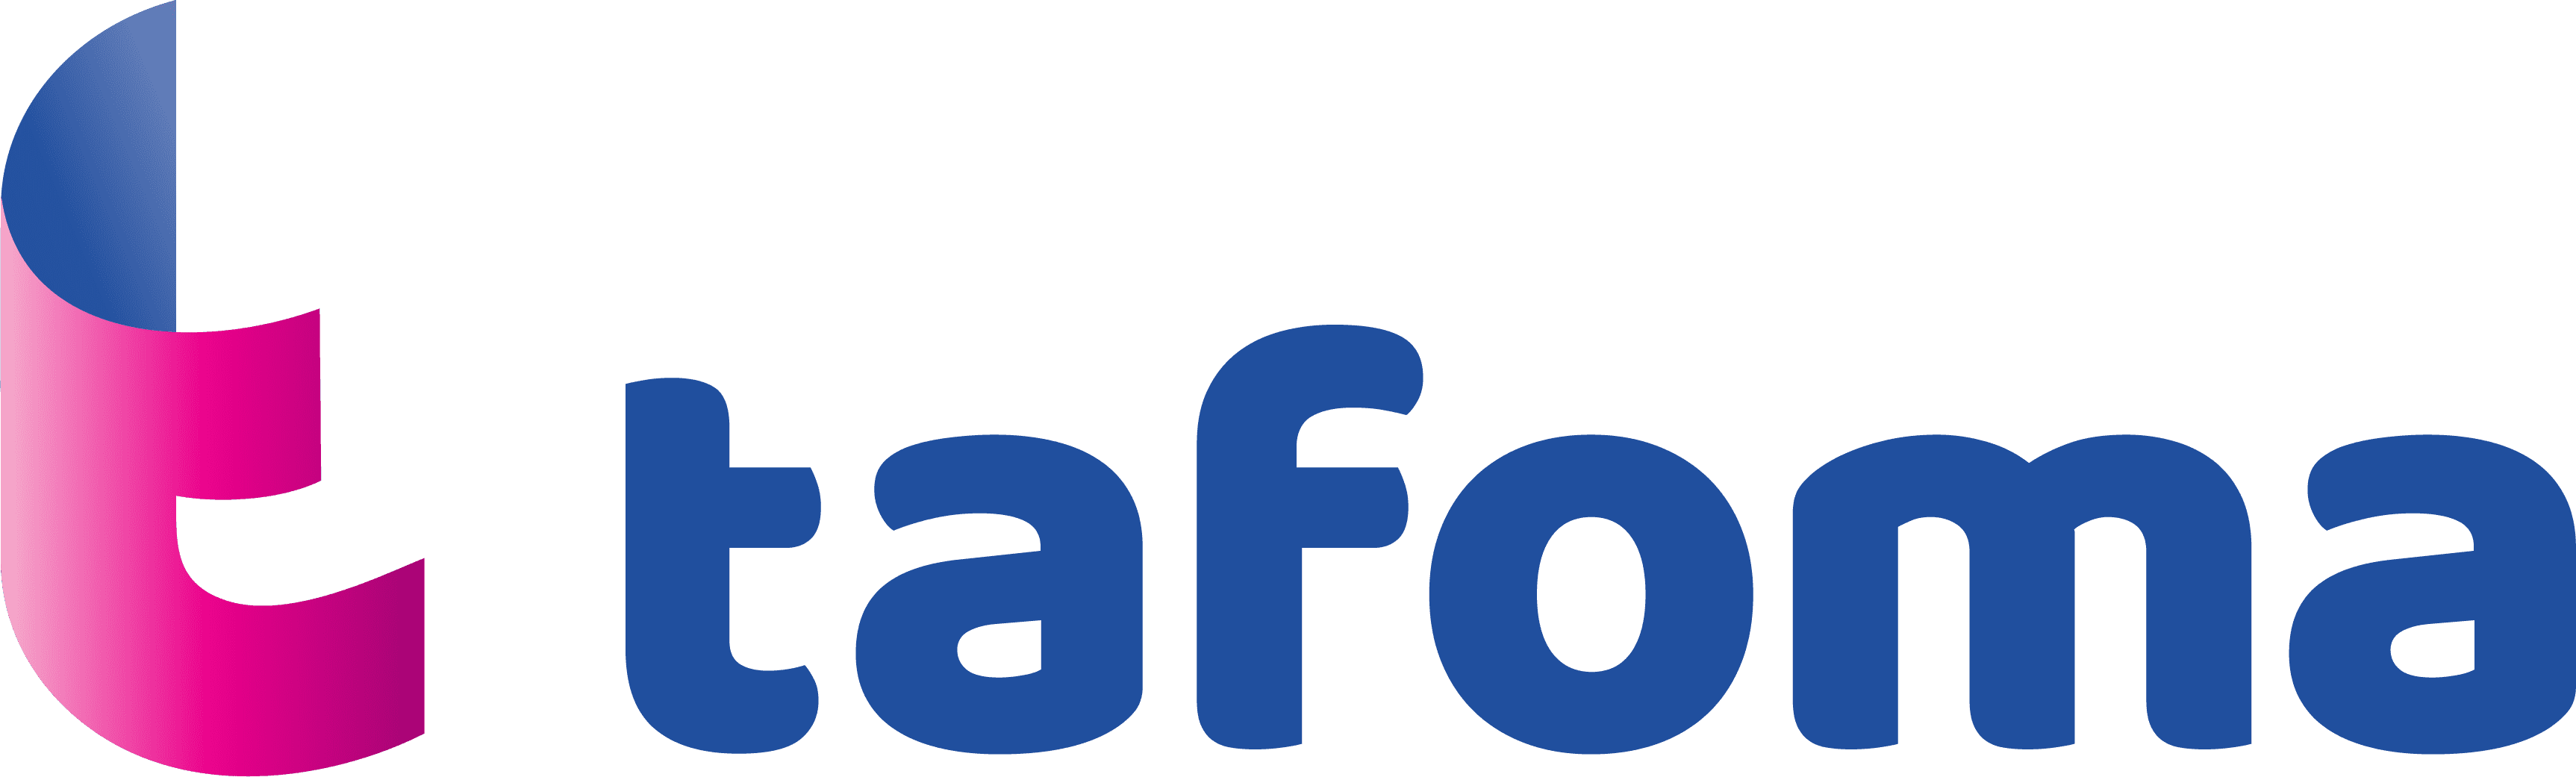 Tafoma's logo.